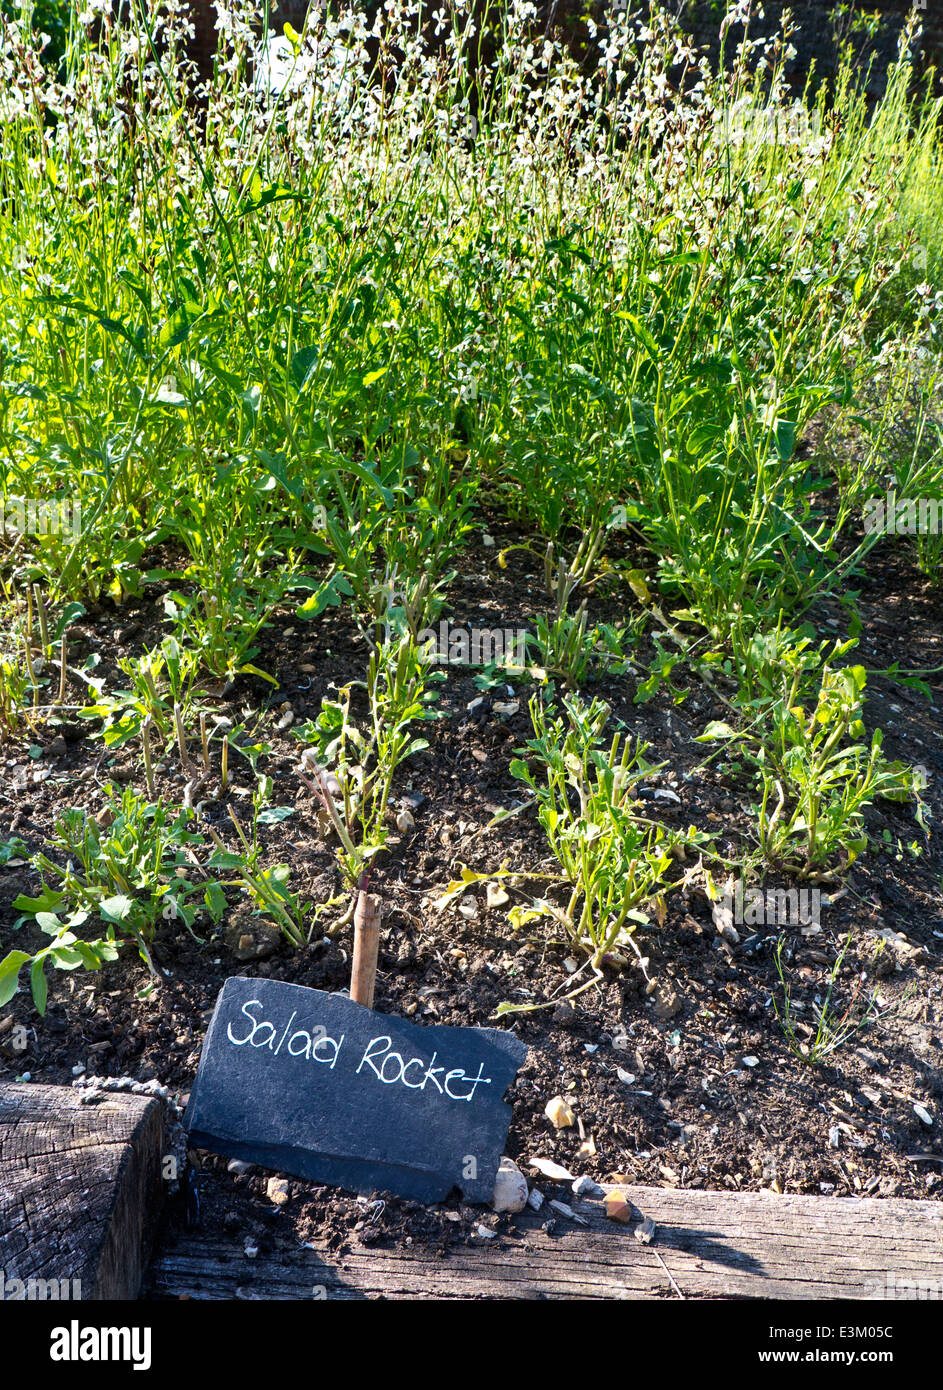 Eruca sativa, una planta anual comestible, conocido como Salad Rocket crecen en un huerto con pizarra rústico nombre etiqueta delante Foto de stock